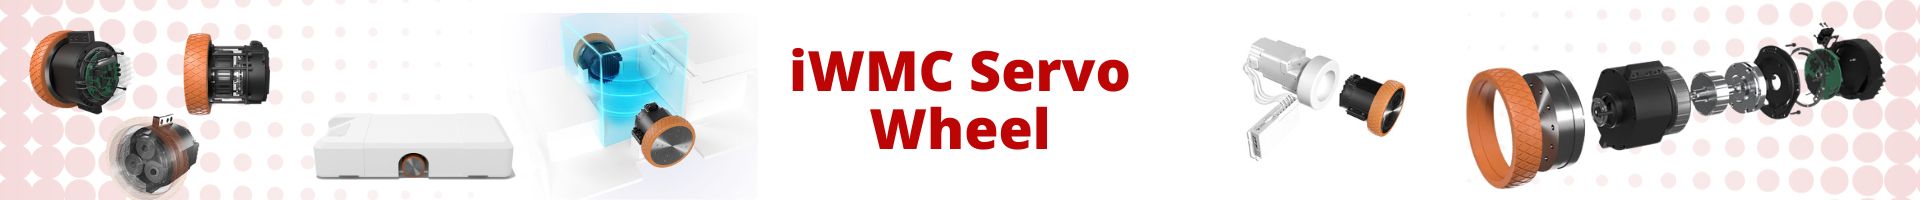 iWMC servo wheel banner